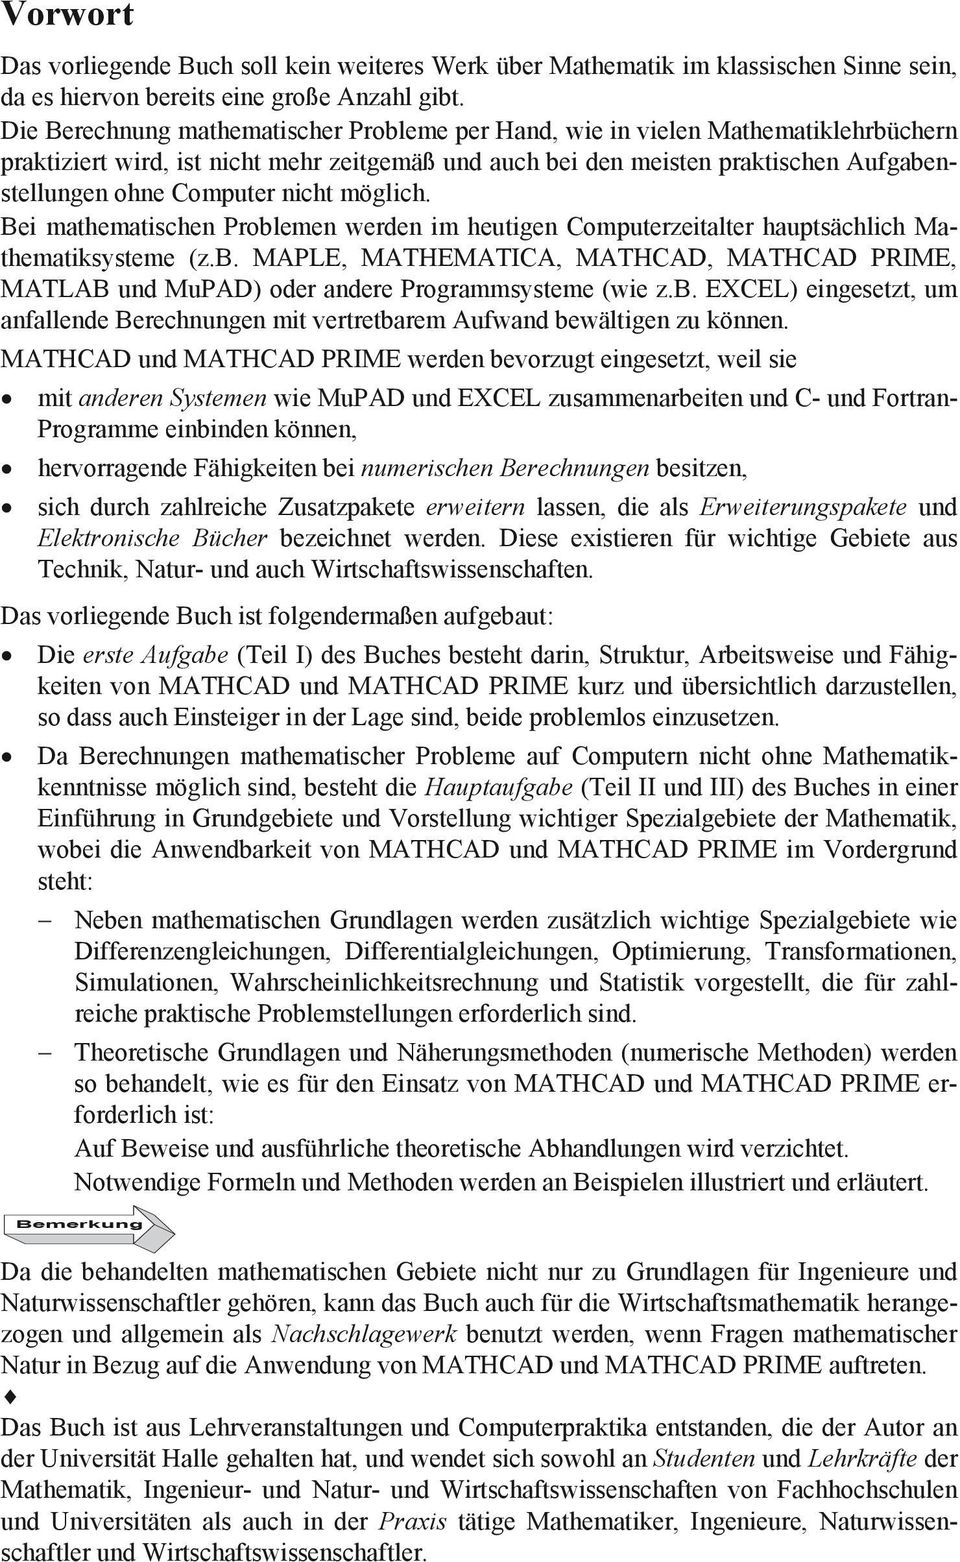 nicht möglich. Bei mathematischen Problemen werden im heutigen Computerzeitalter hauptsächlich Mathematiksysteme (z.b. MAPLE, MATHEMATICA, MATHCAD, MATHCAD PRIME, MATLAB und MuPAD) oder andere Programmsysteme (wie z.